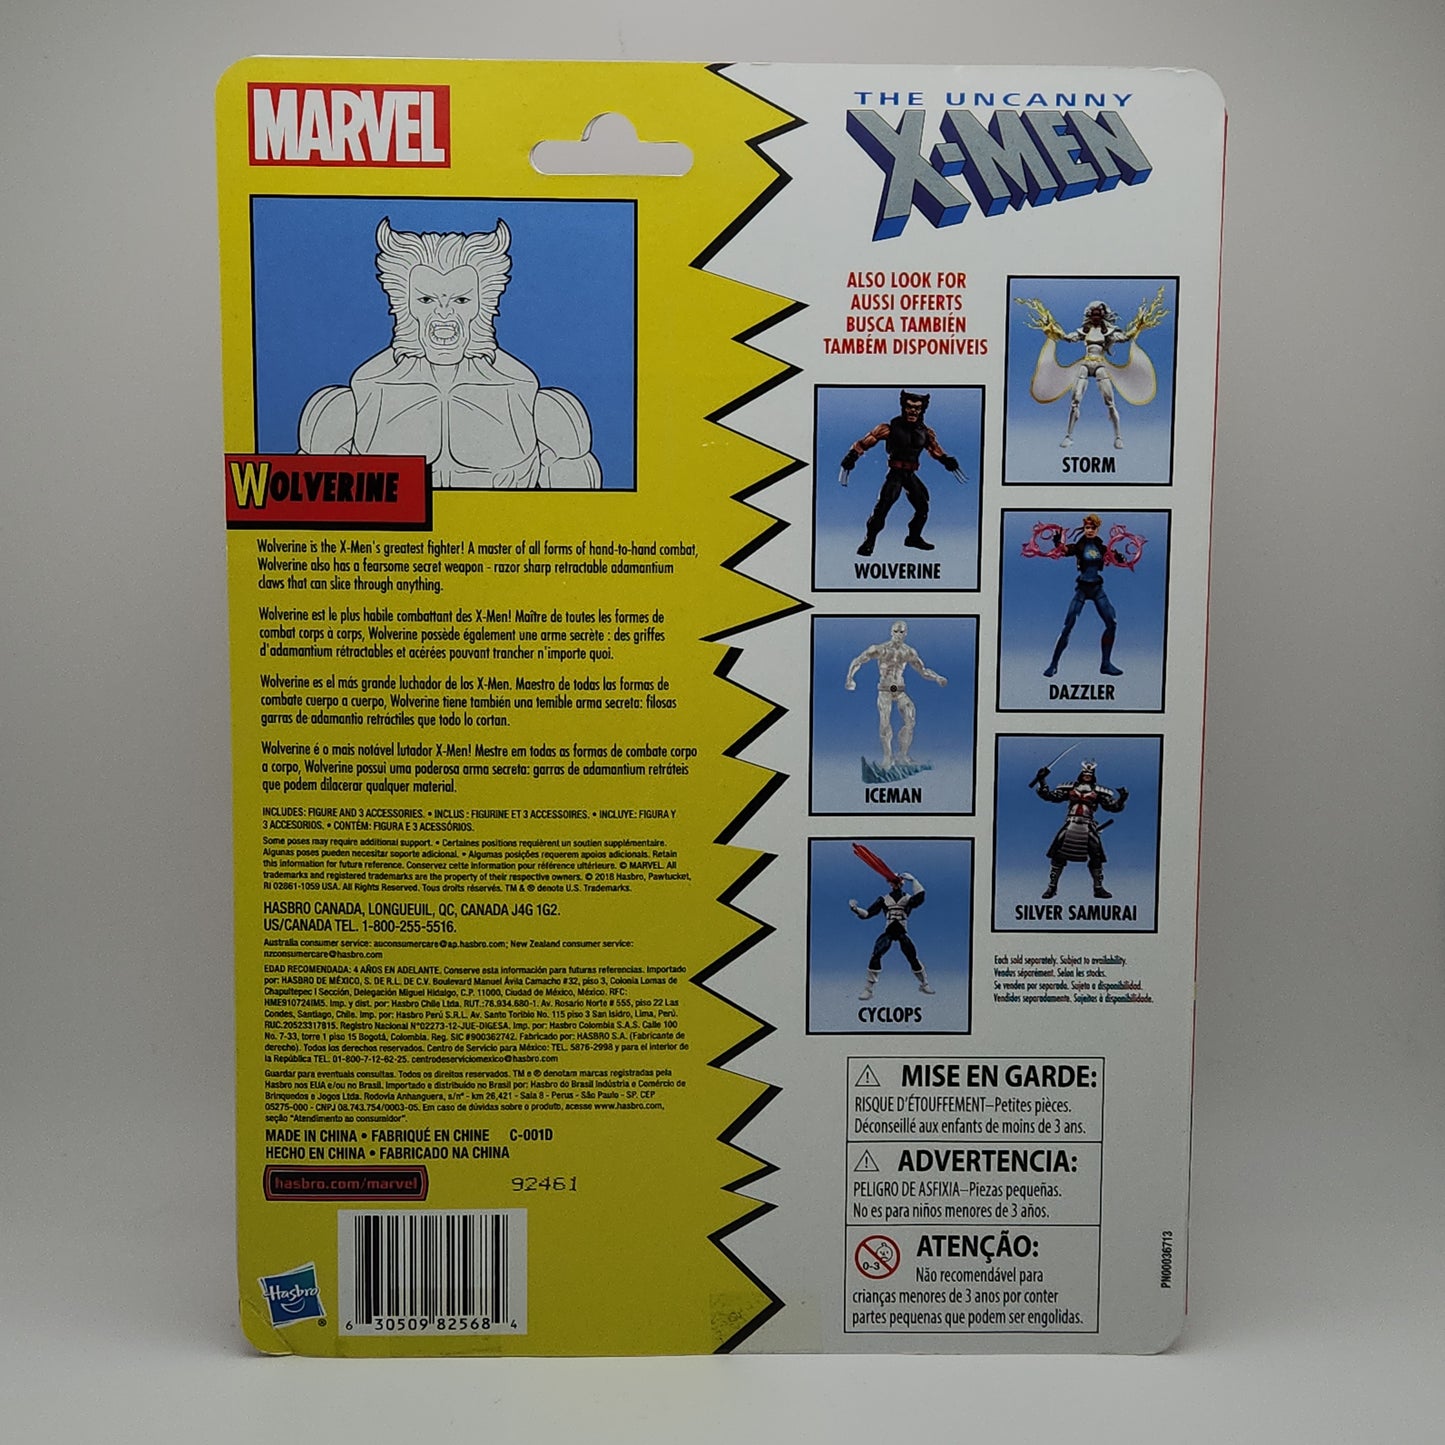 Marvel Legends Retro Collection- The Uncanny X-Men: X-Men's Wolverine